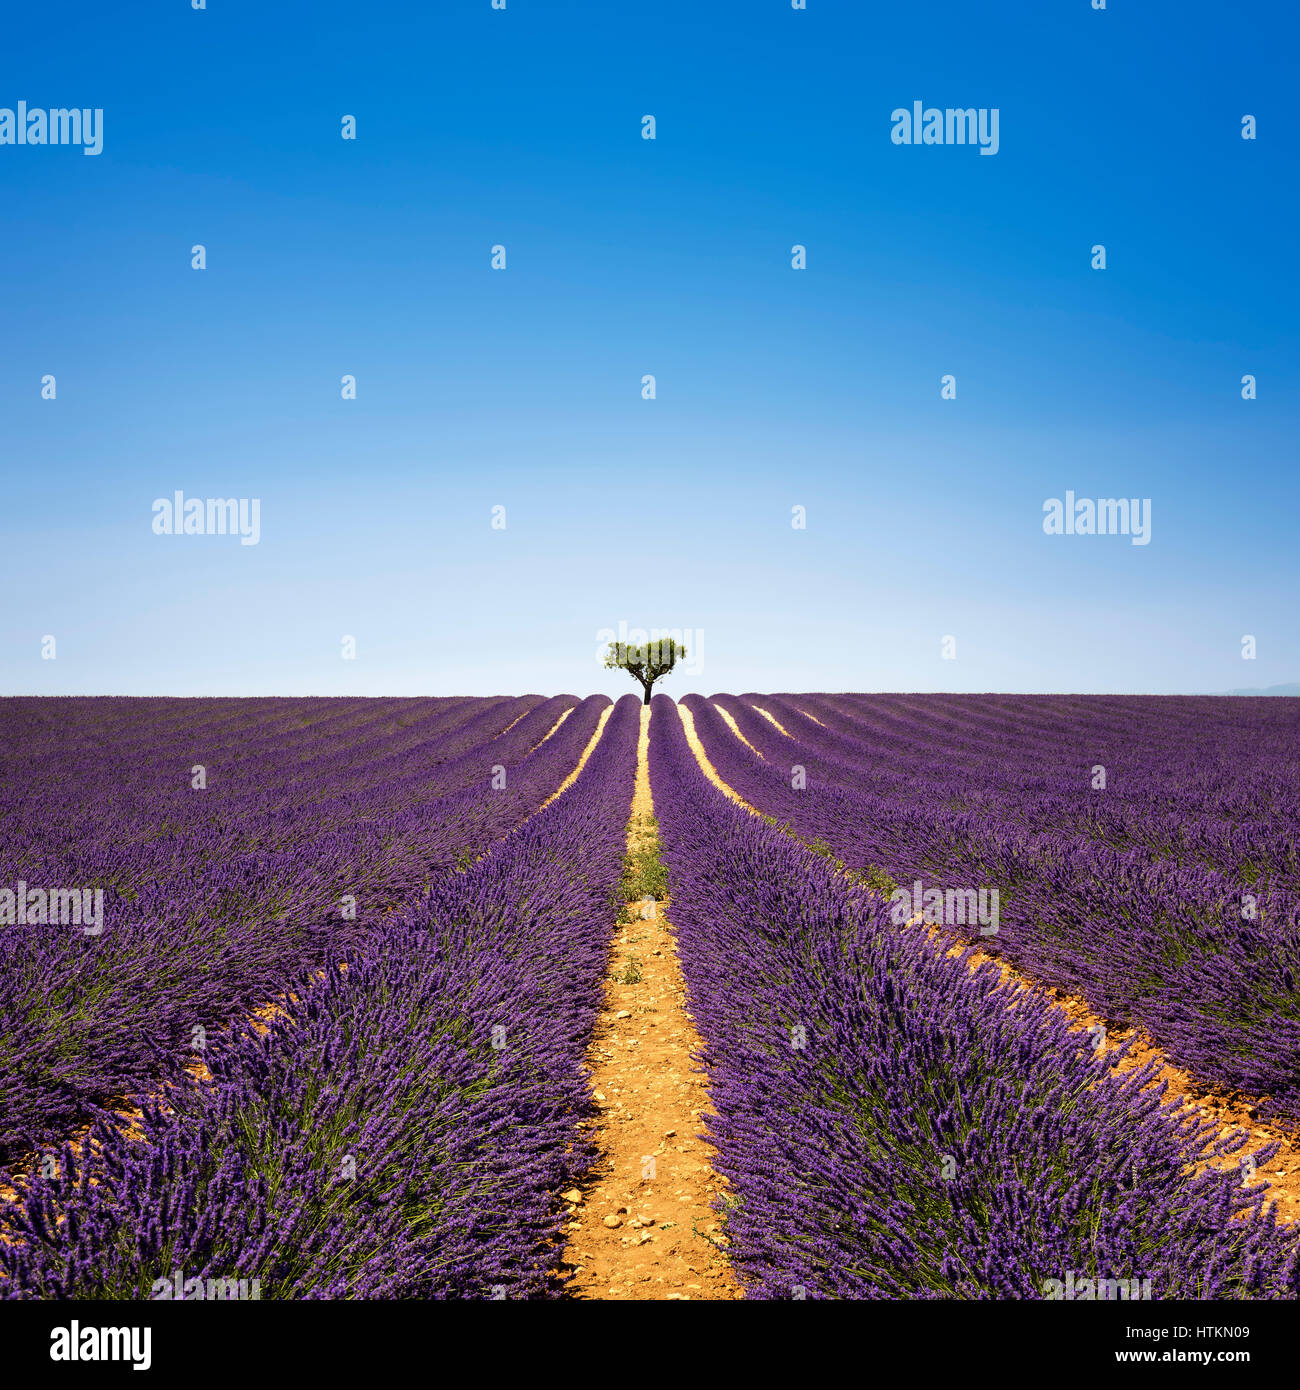 Lavendel Blumen blühen Feld und einem einsamen Baum bergauf. Valensole, Provence, Frankreich, Europa. Stockfoto